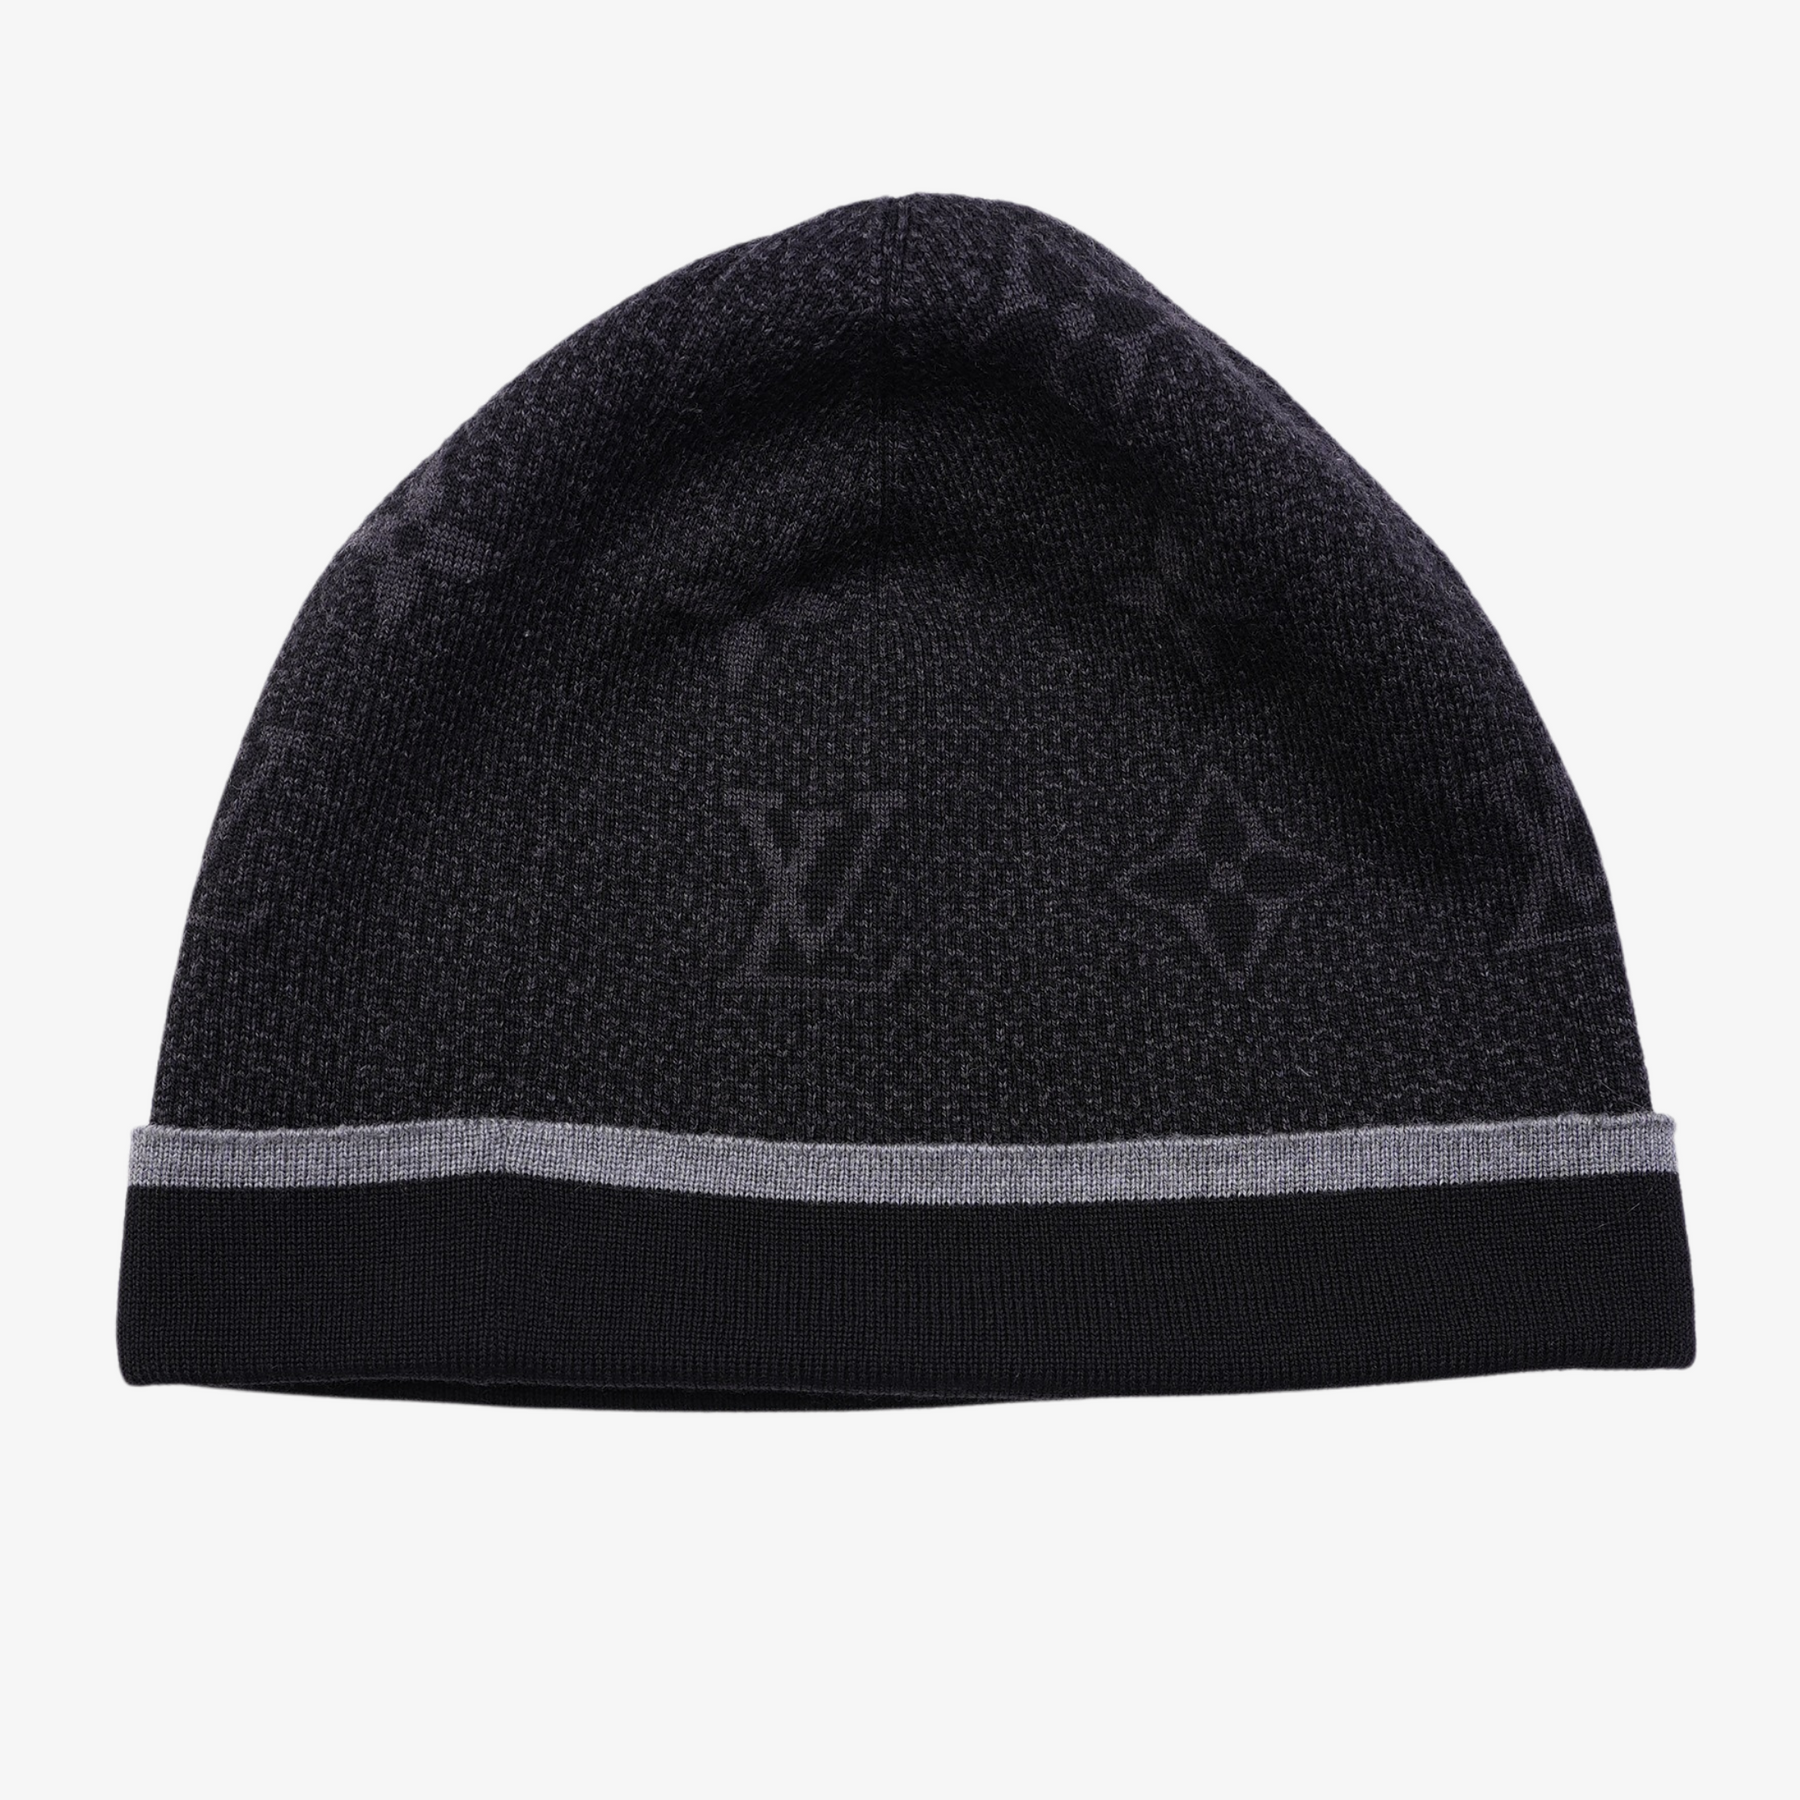 Louis Vuitton My Monogram Eclipse Beanie - Black Hats, Accessories